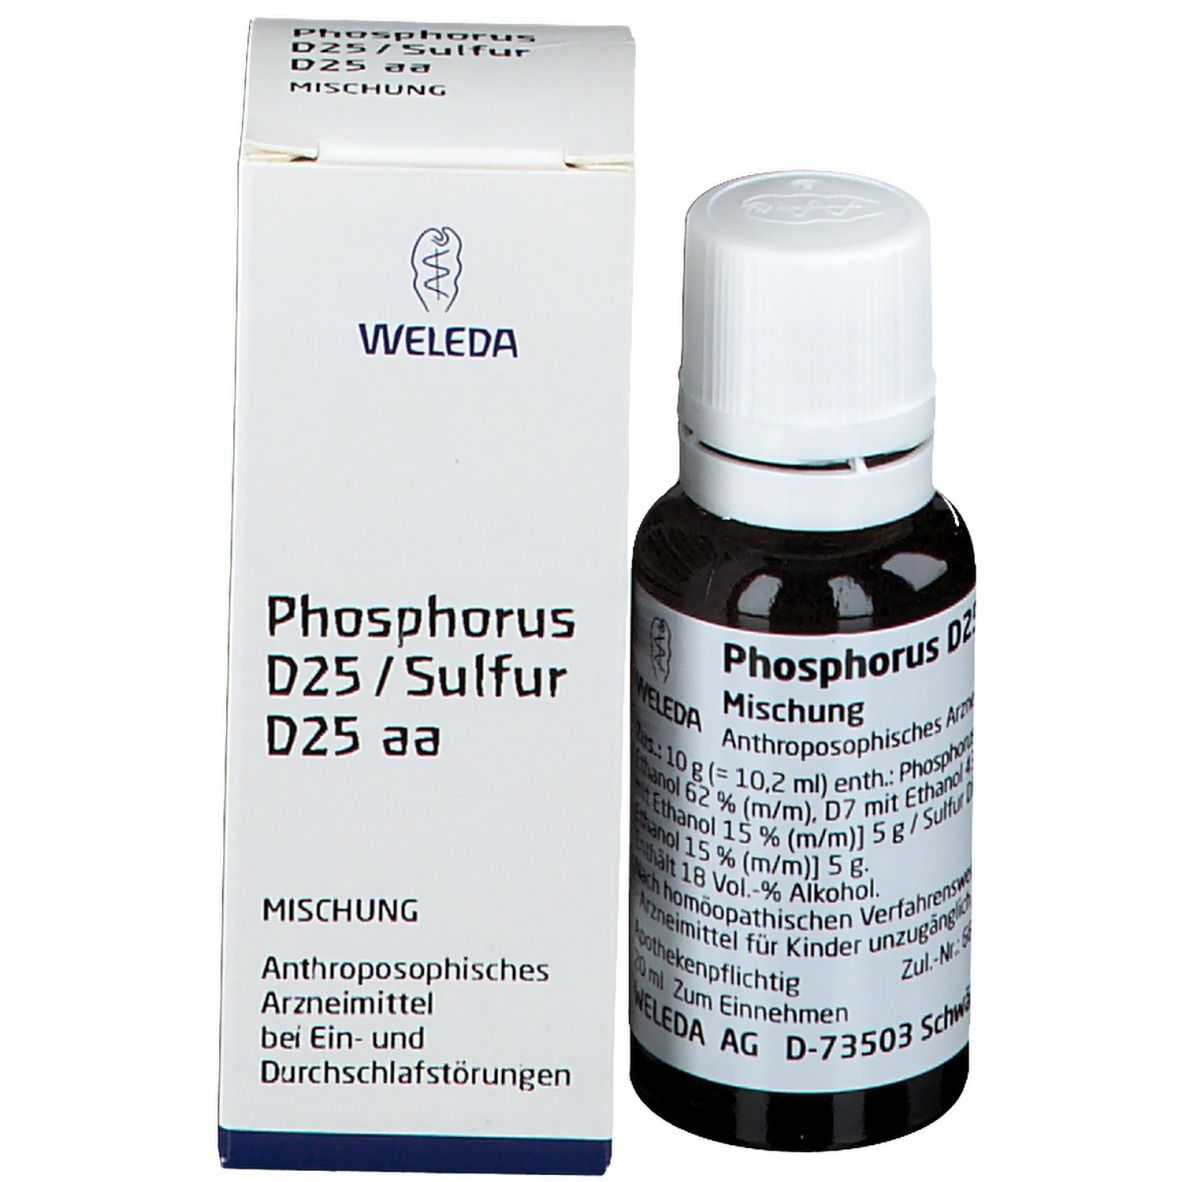 Phosphorus D25 / Sulfur D25 aa